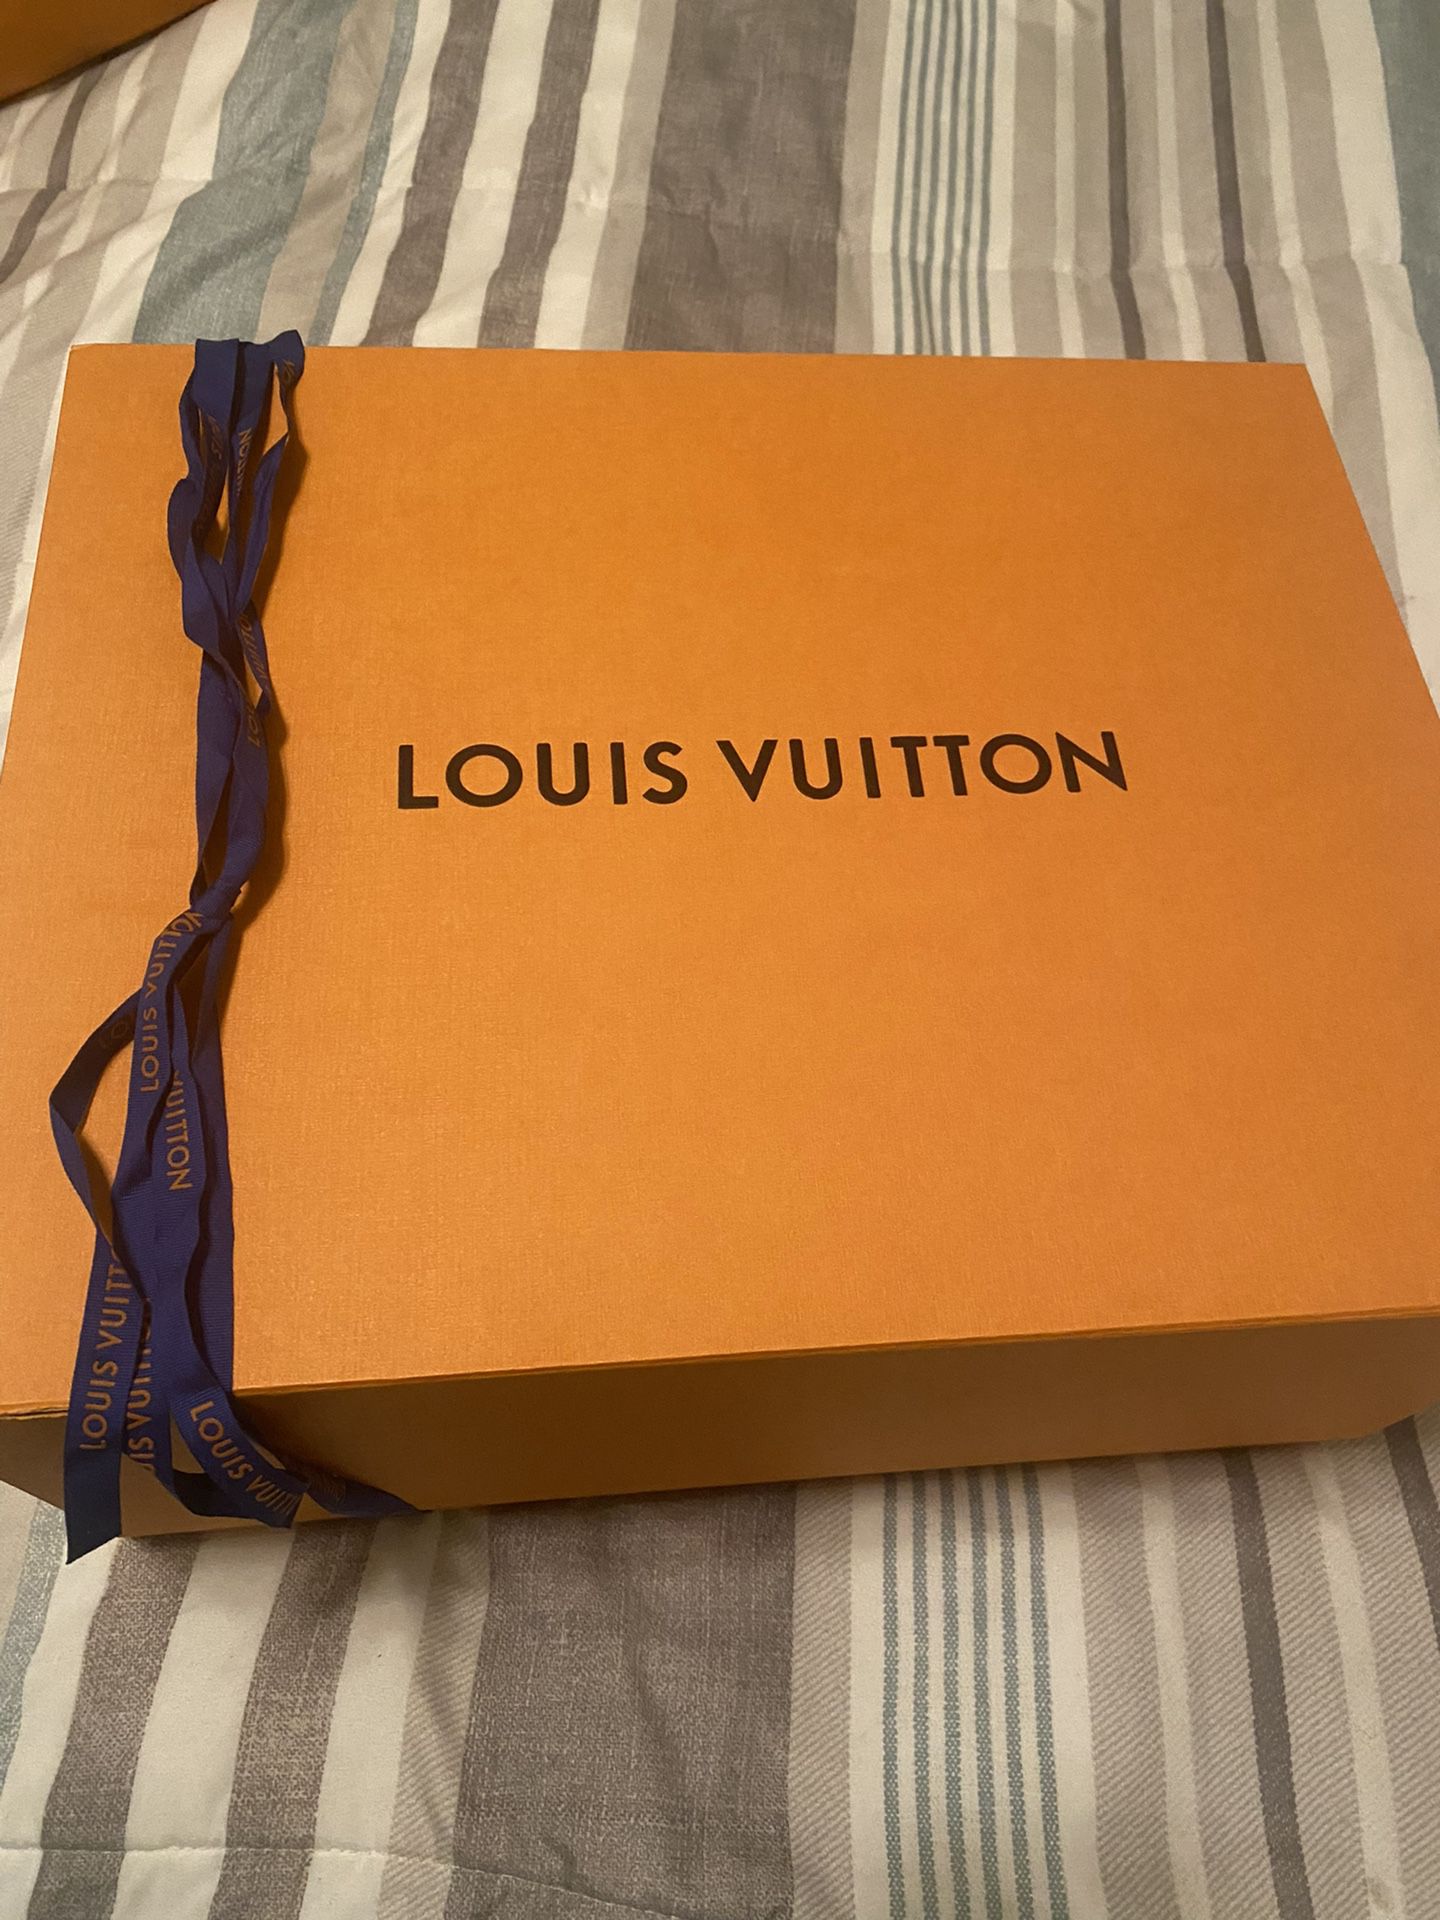 Louis Vuitton Manhattan Gm for Sale in Marietta, GA - OfferUp